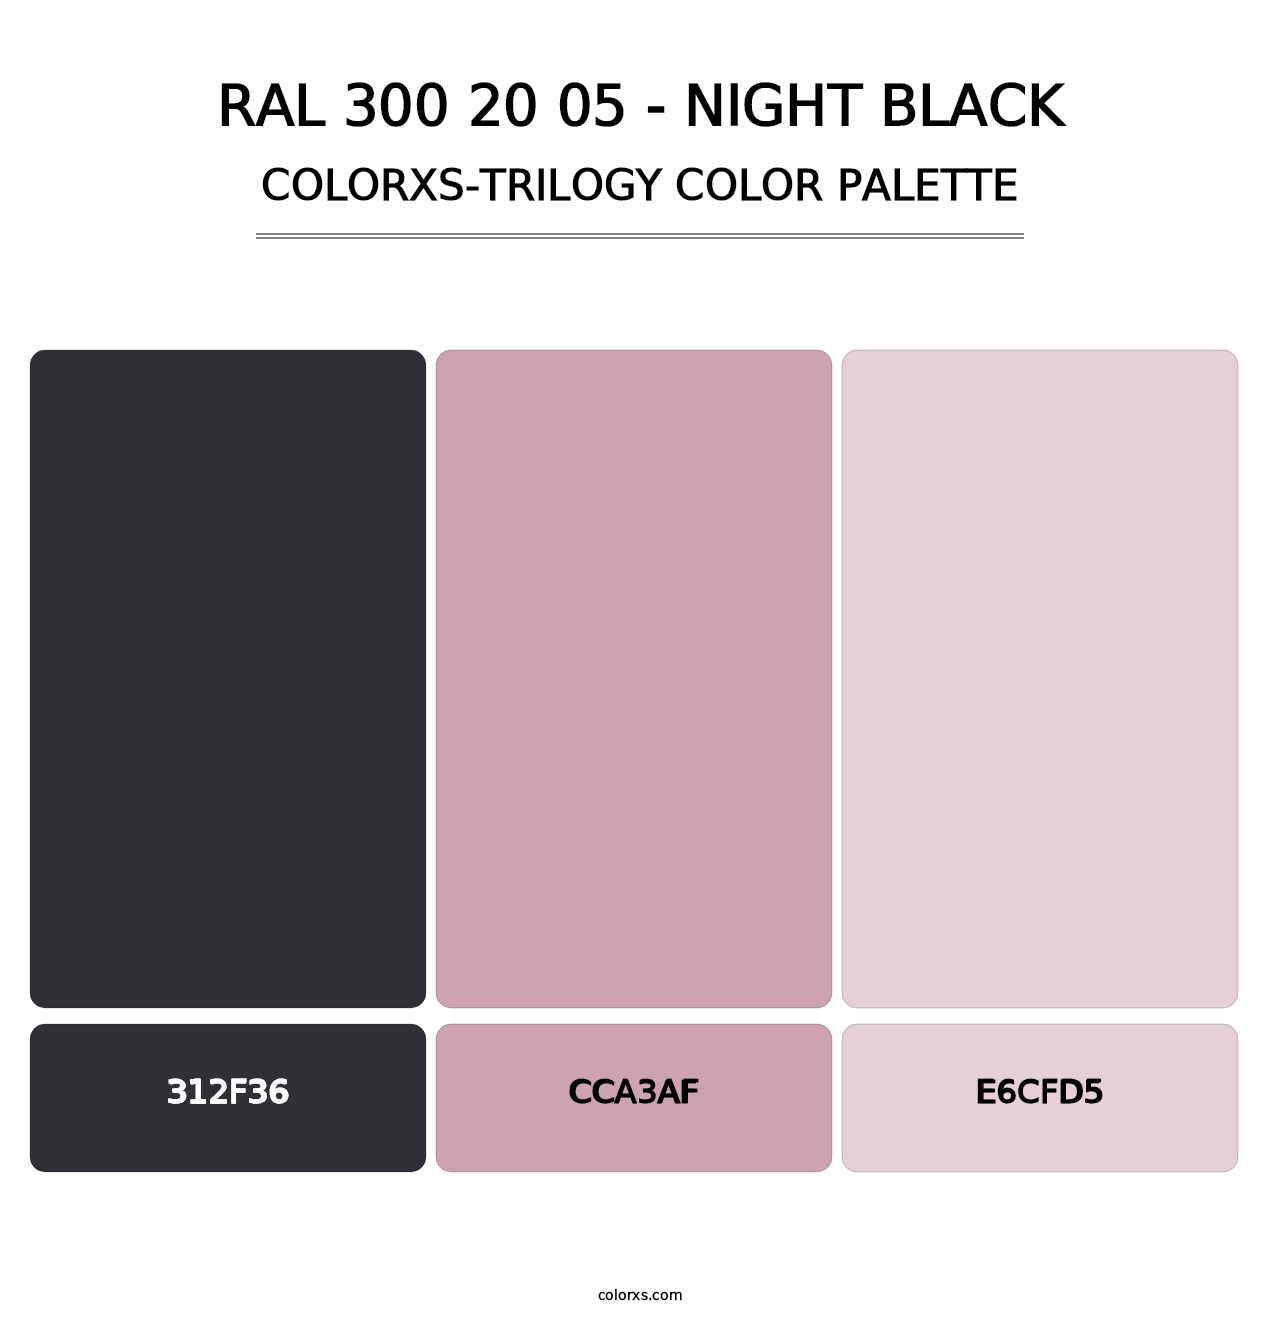 RAL 300 20 05 - Night Black - Colorxs Trilogy Palette